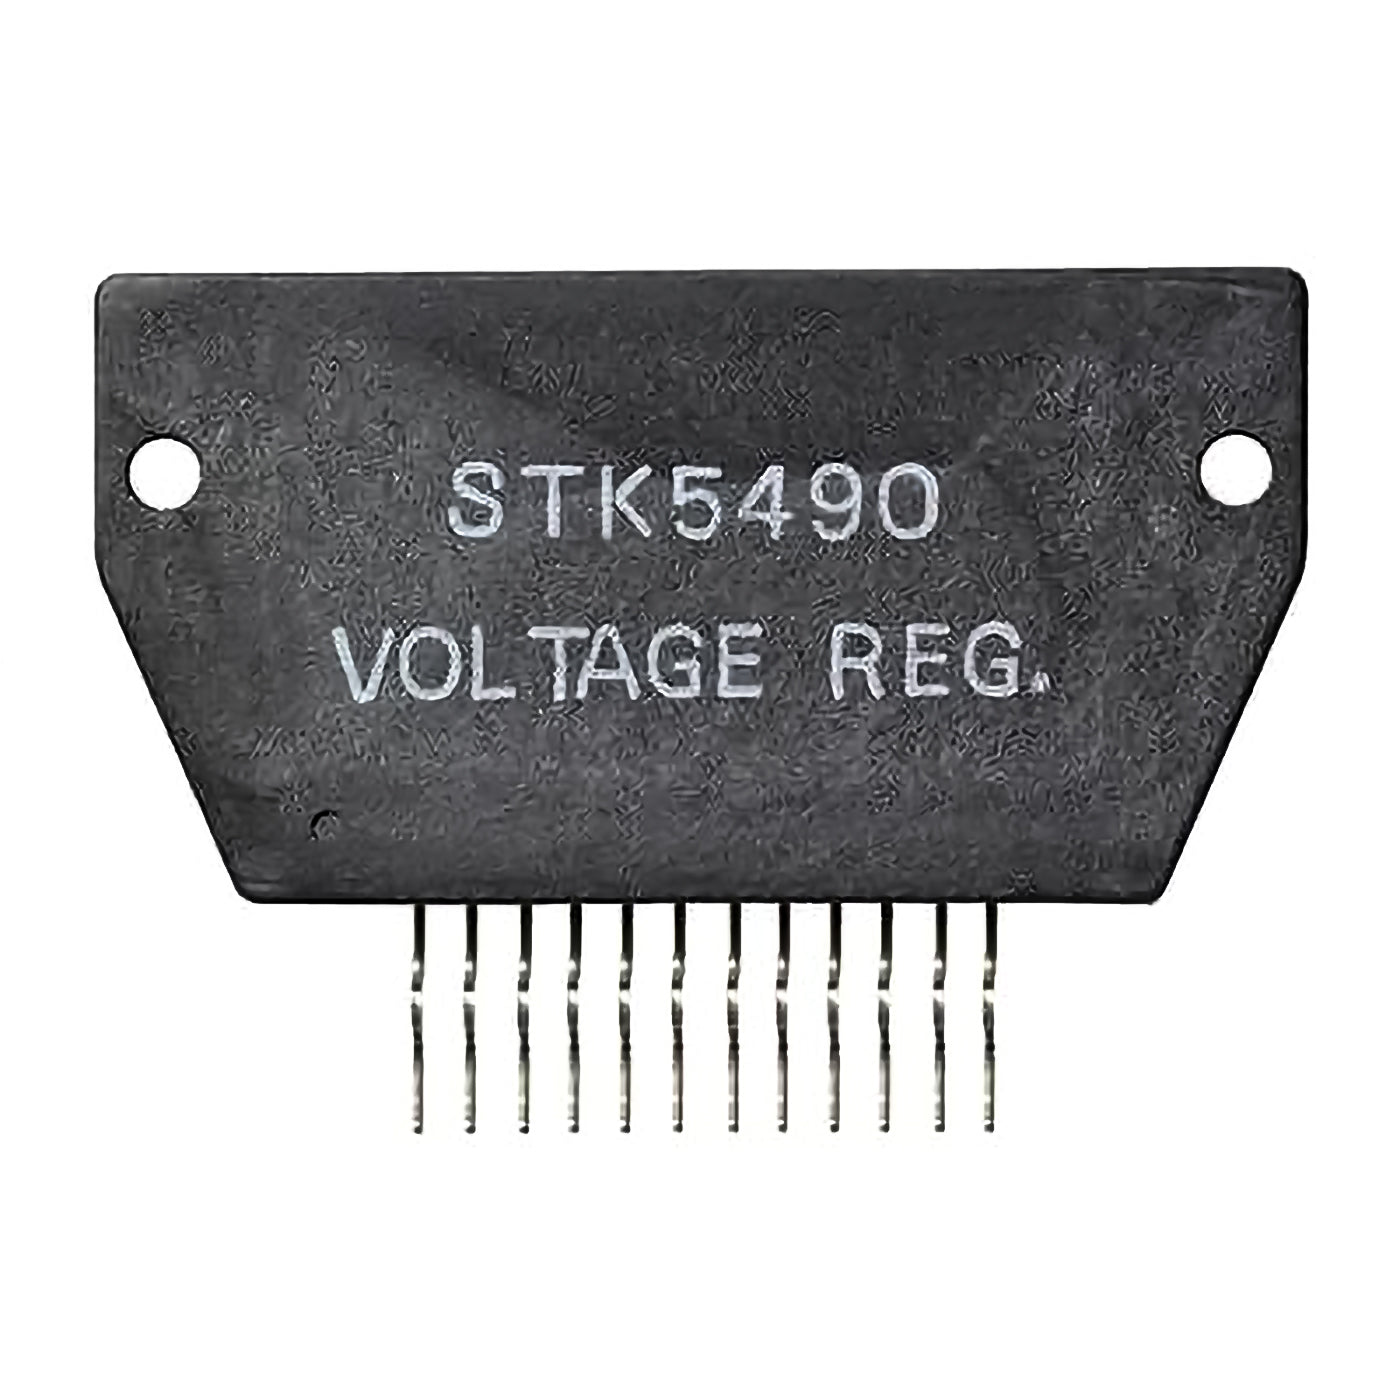 STK5490 componente elettronico, circuito integrato, transistor, voltage regulator, 15 contatti